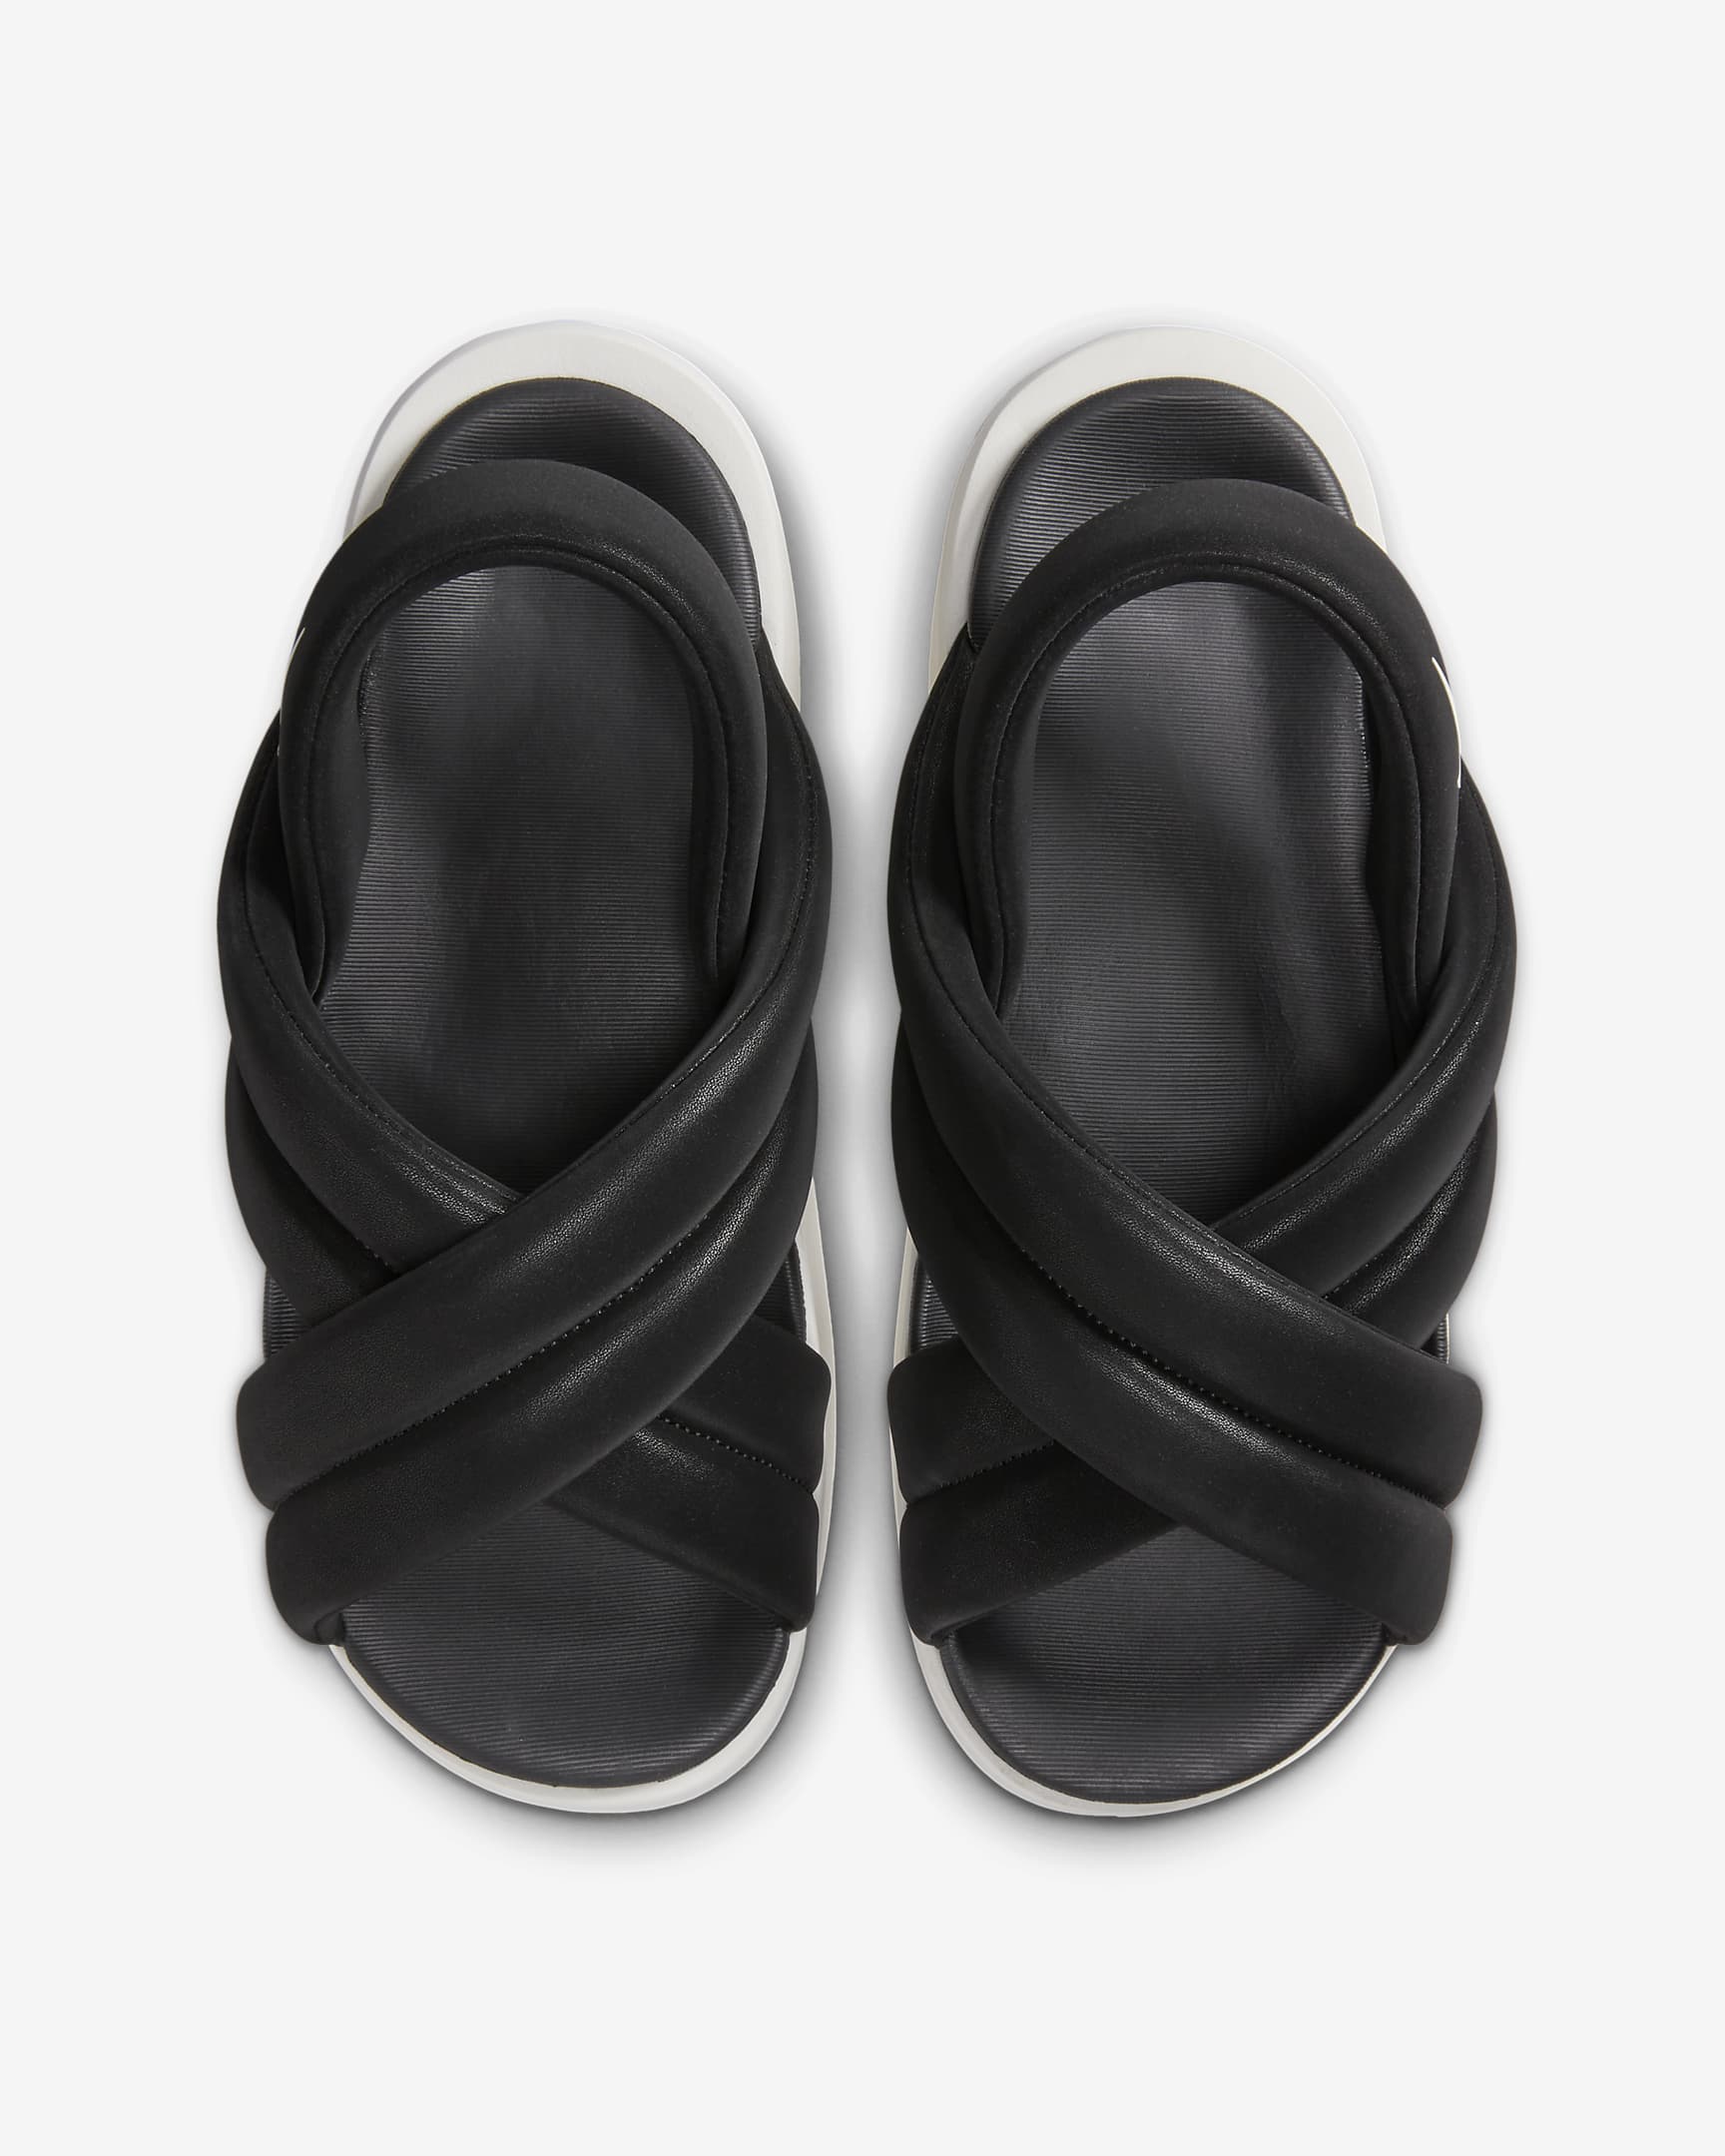 Nike Air Max Isla 女款涼鞋 - 黑色/Sail